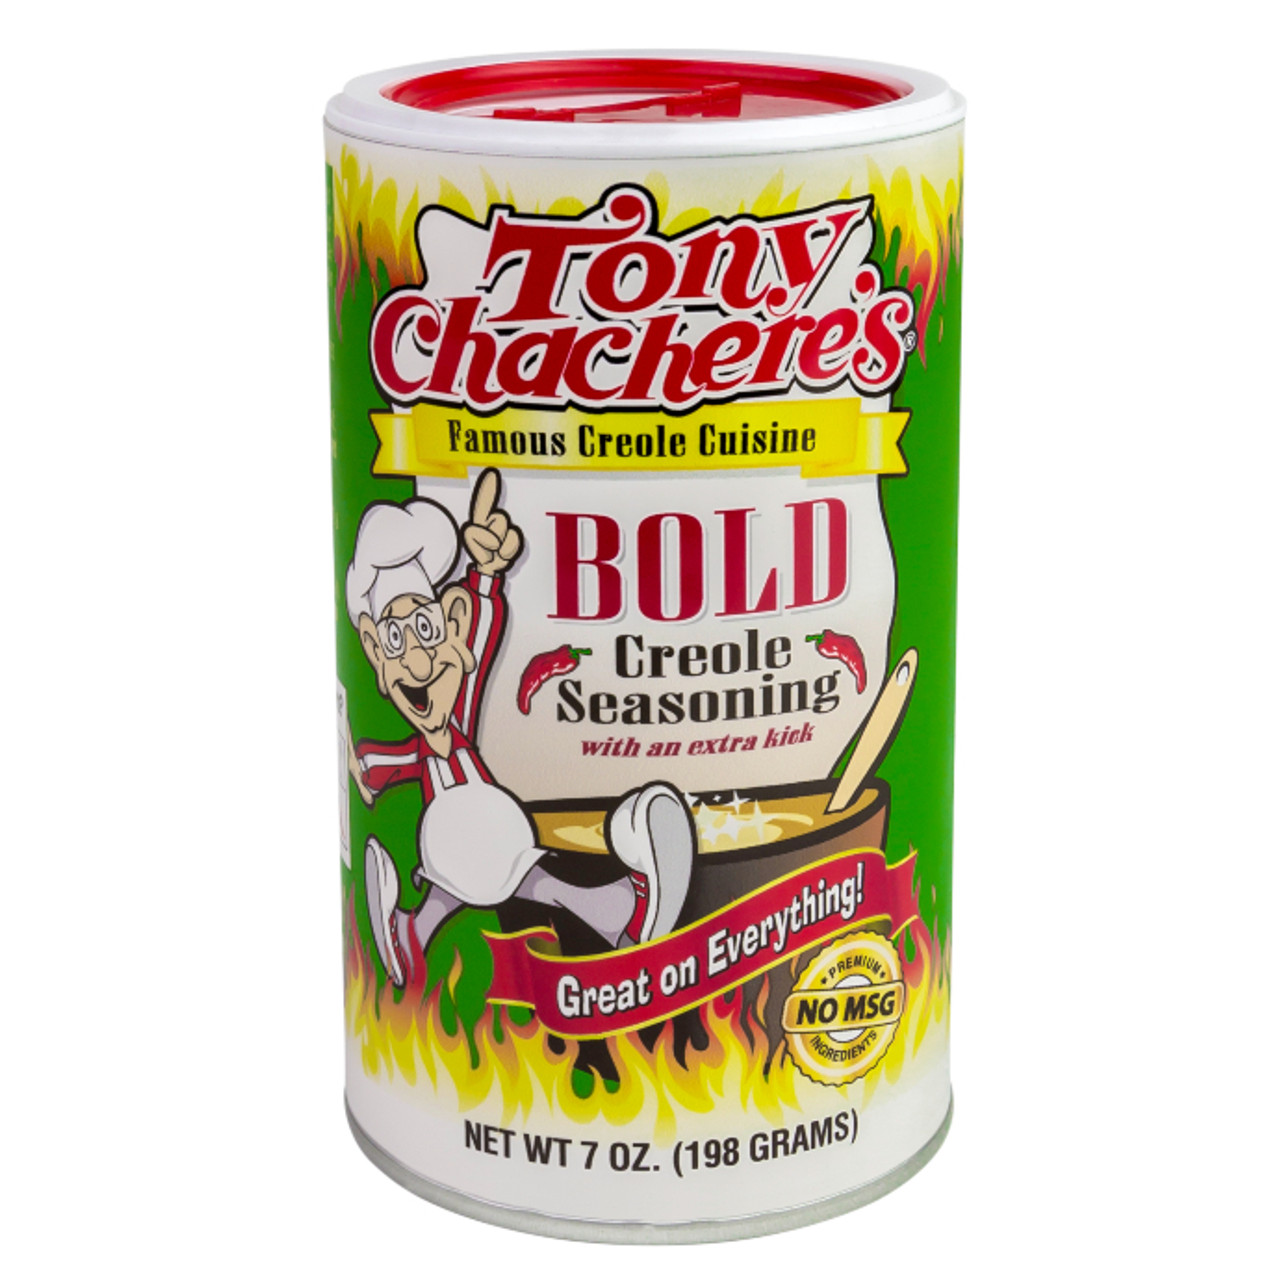 Tony Chacheres Bold Creole Seasoning